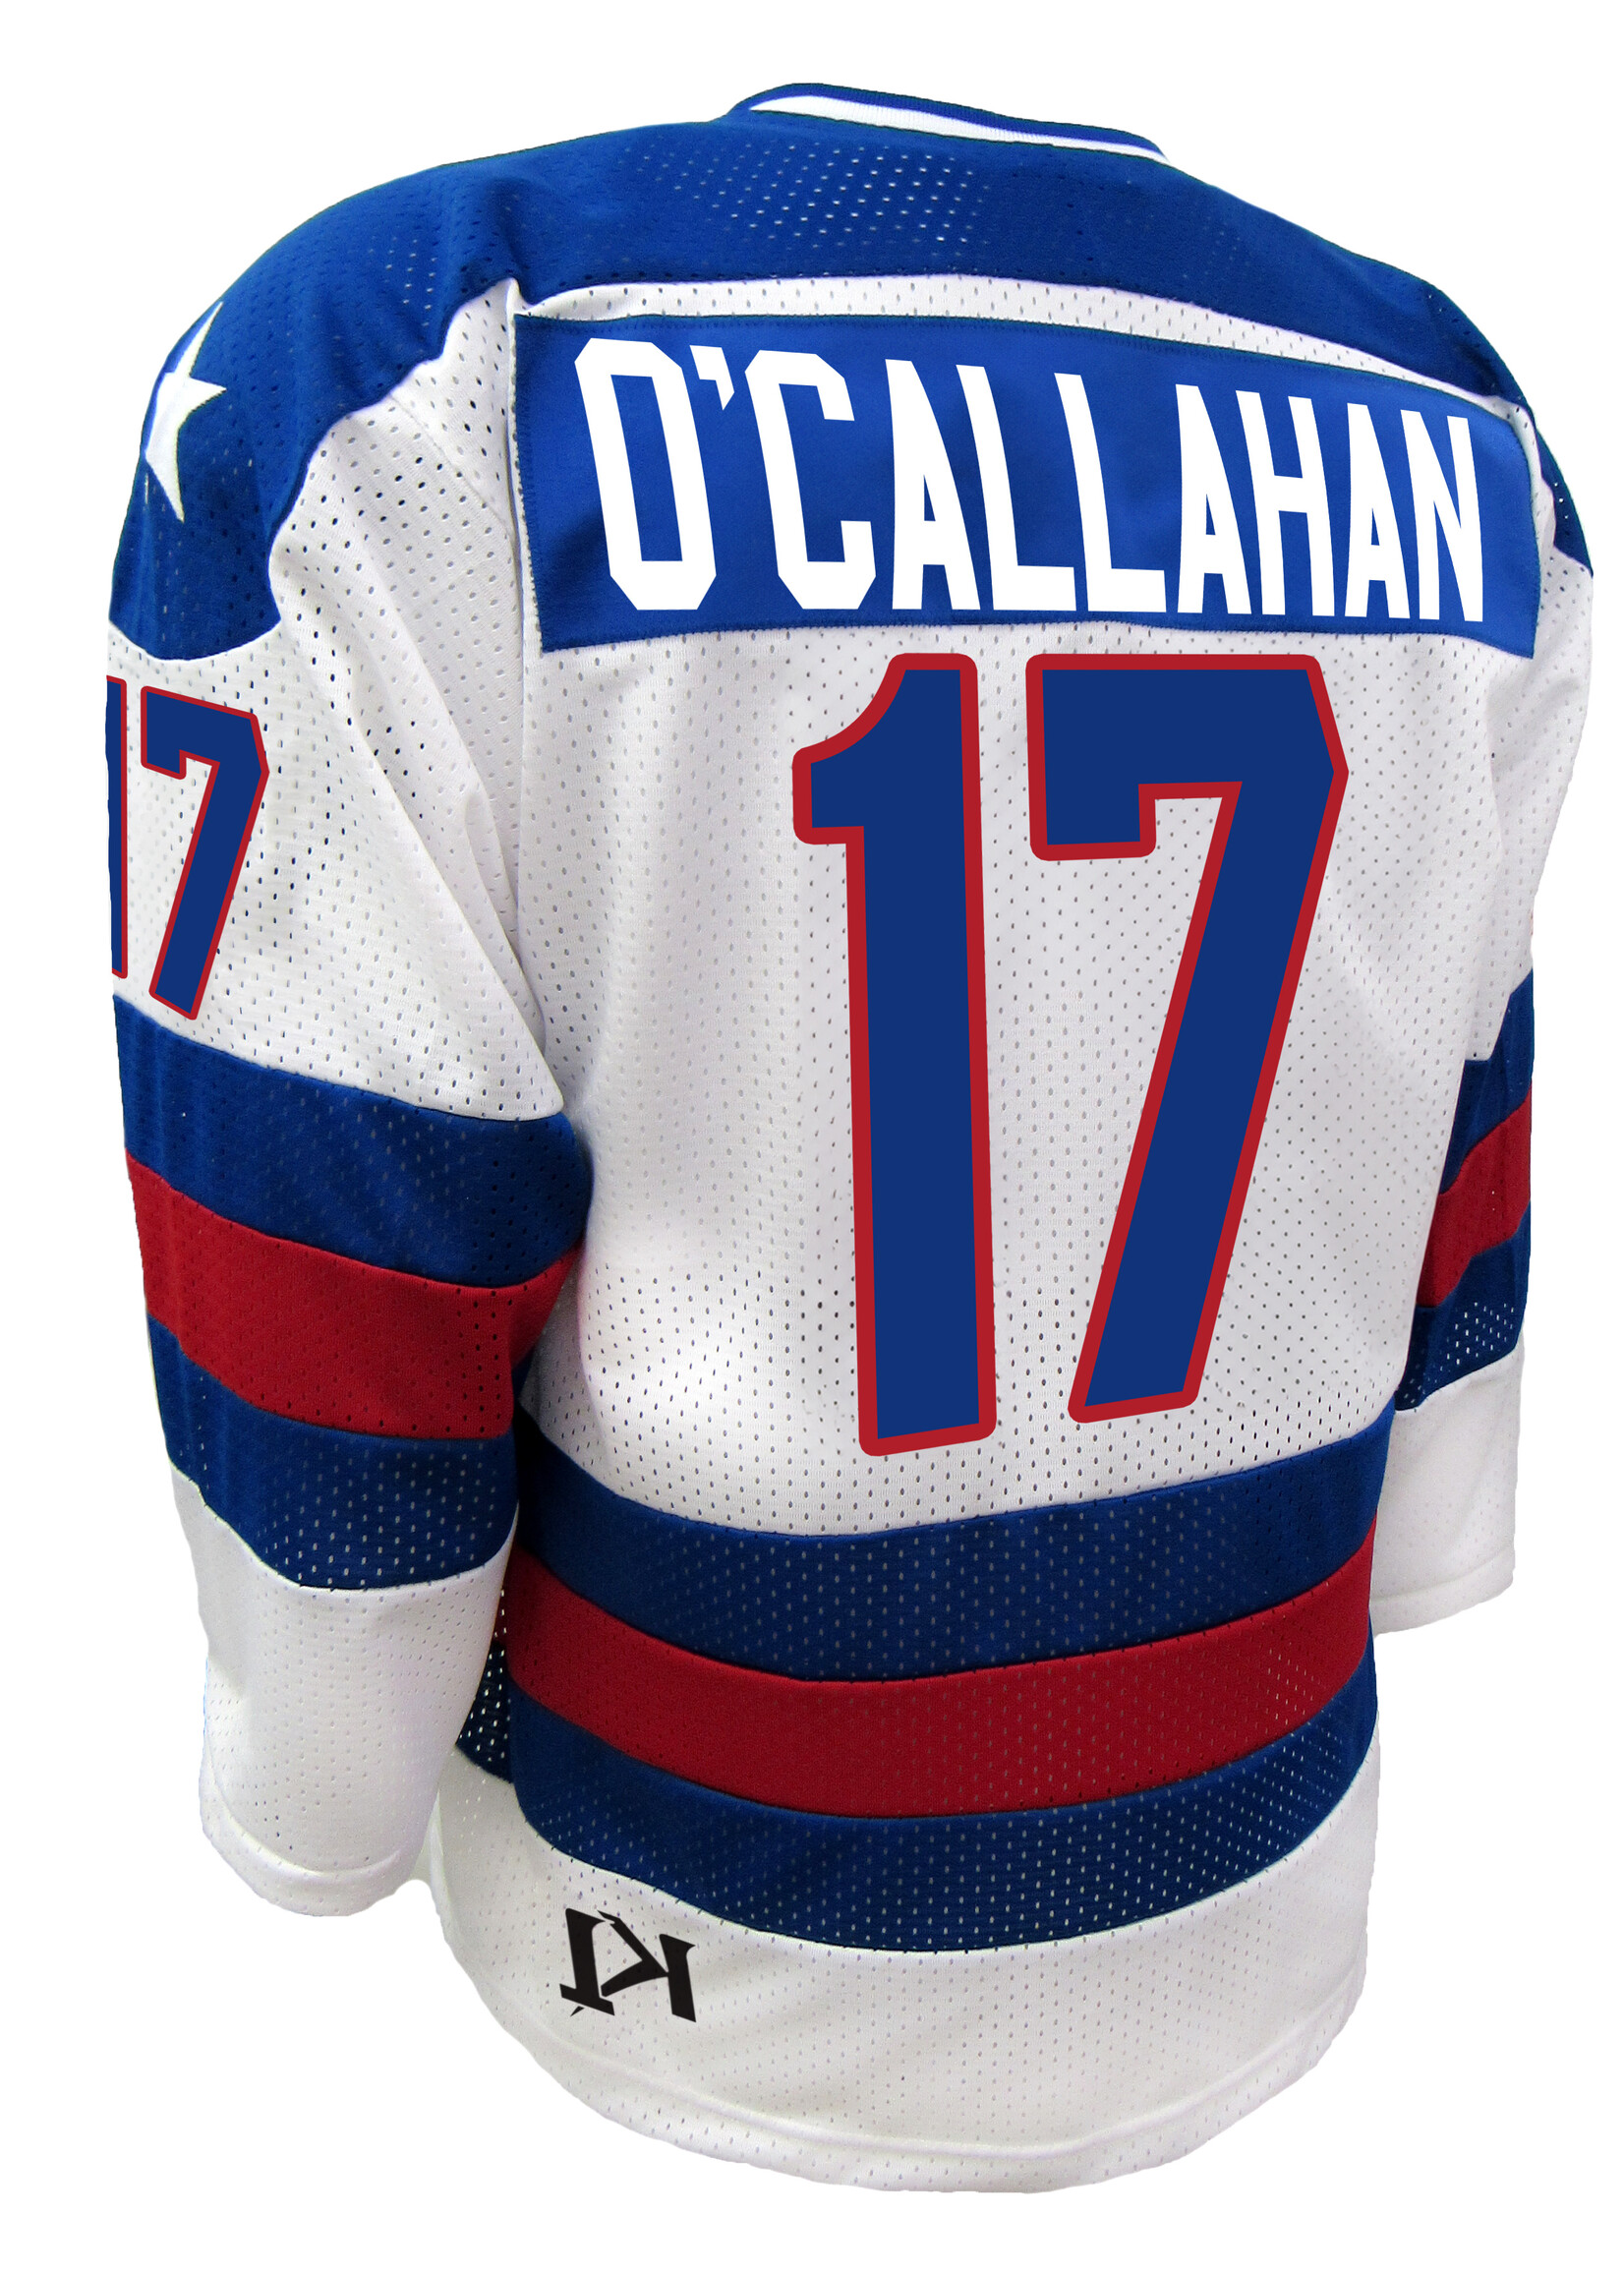 1980 O'Callahan #17 Jersey